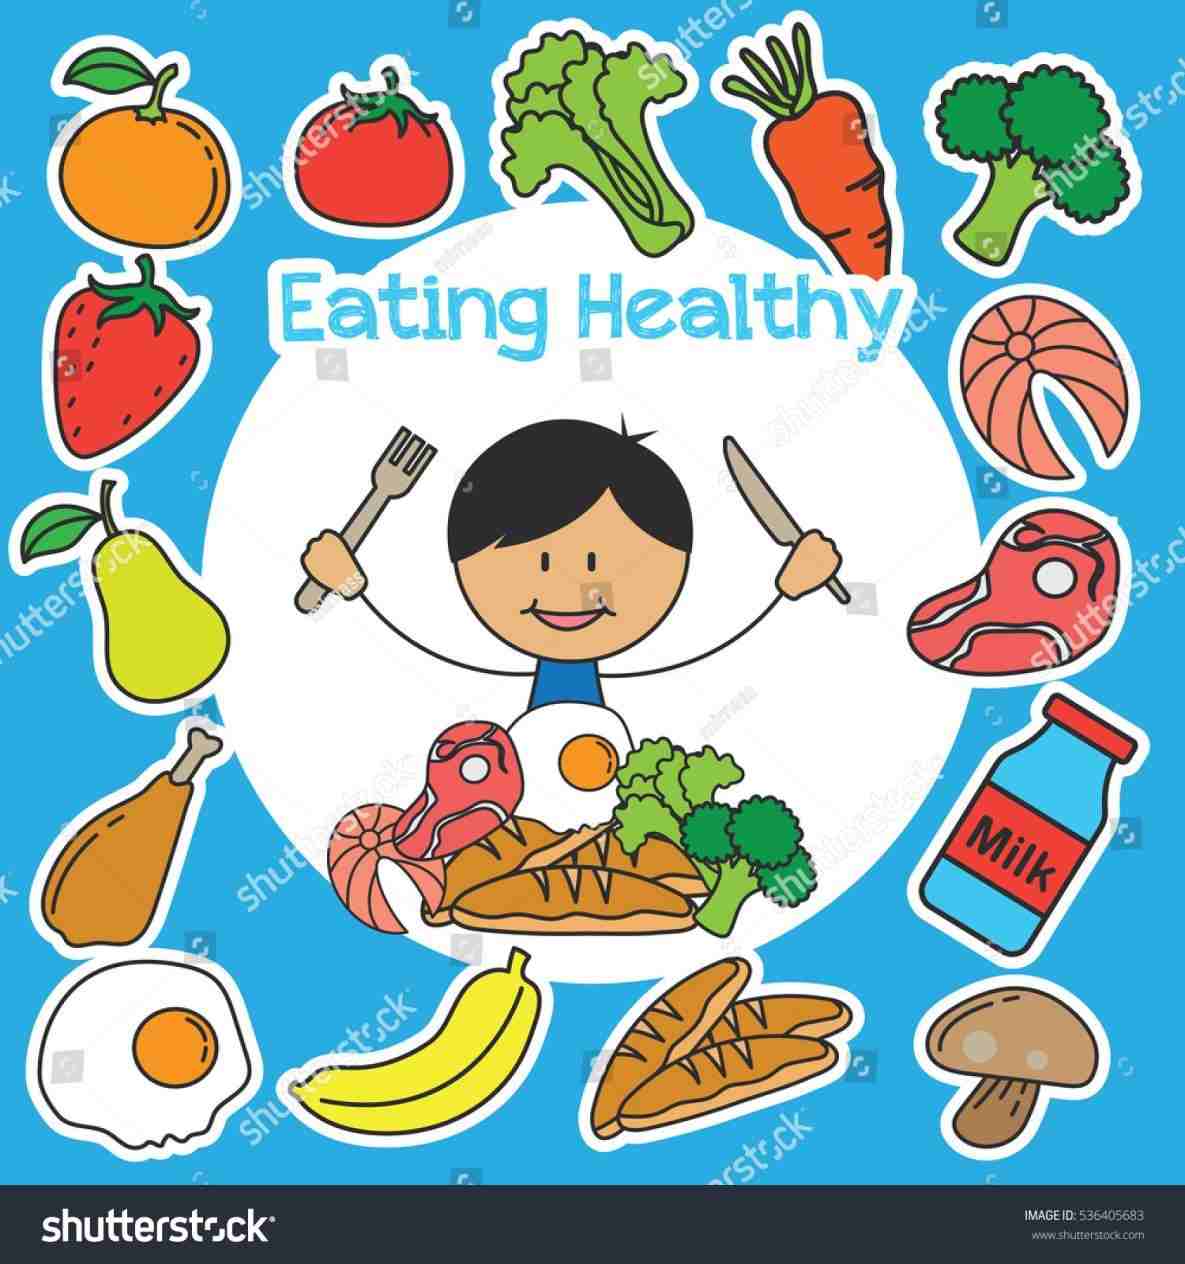 Kids eating healthy.